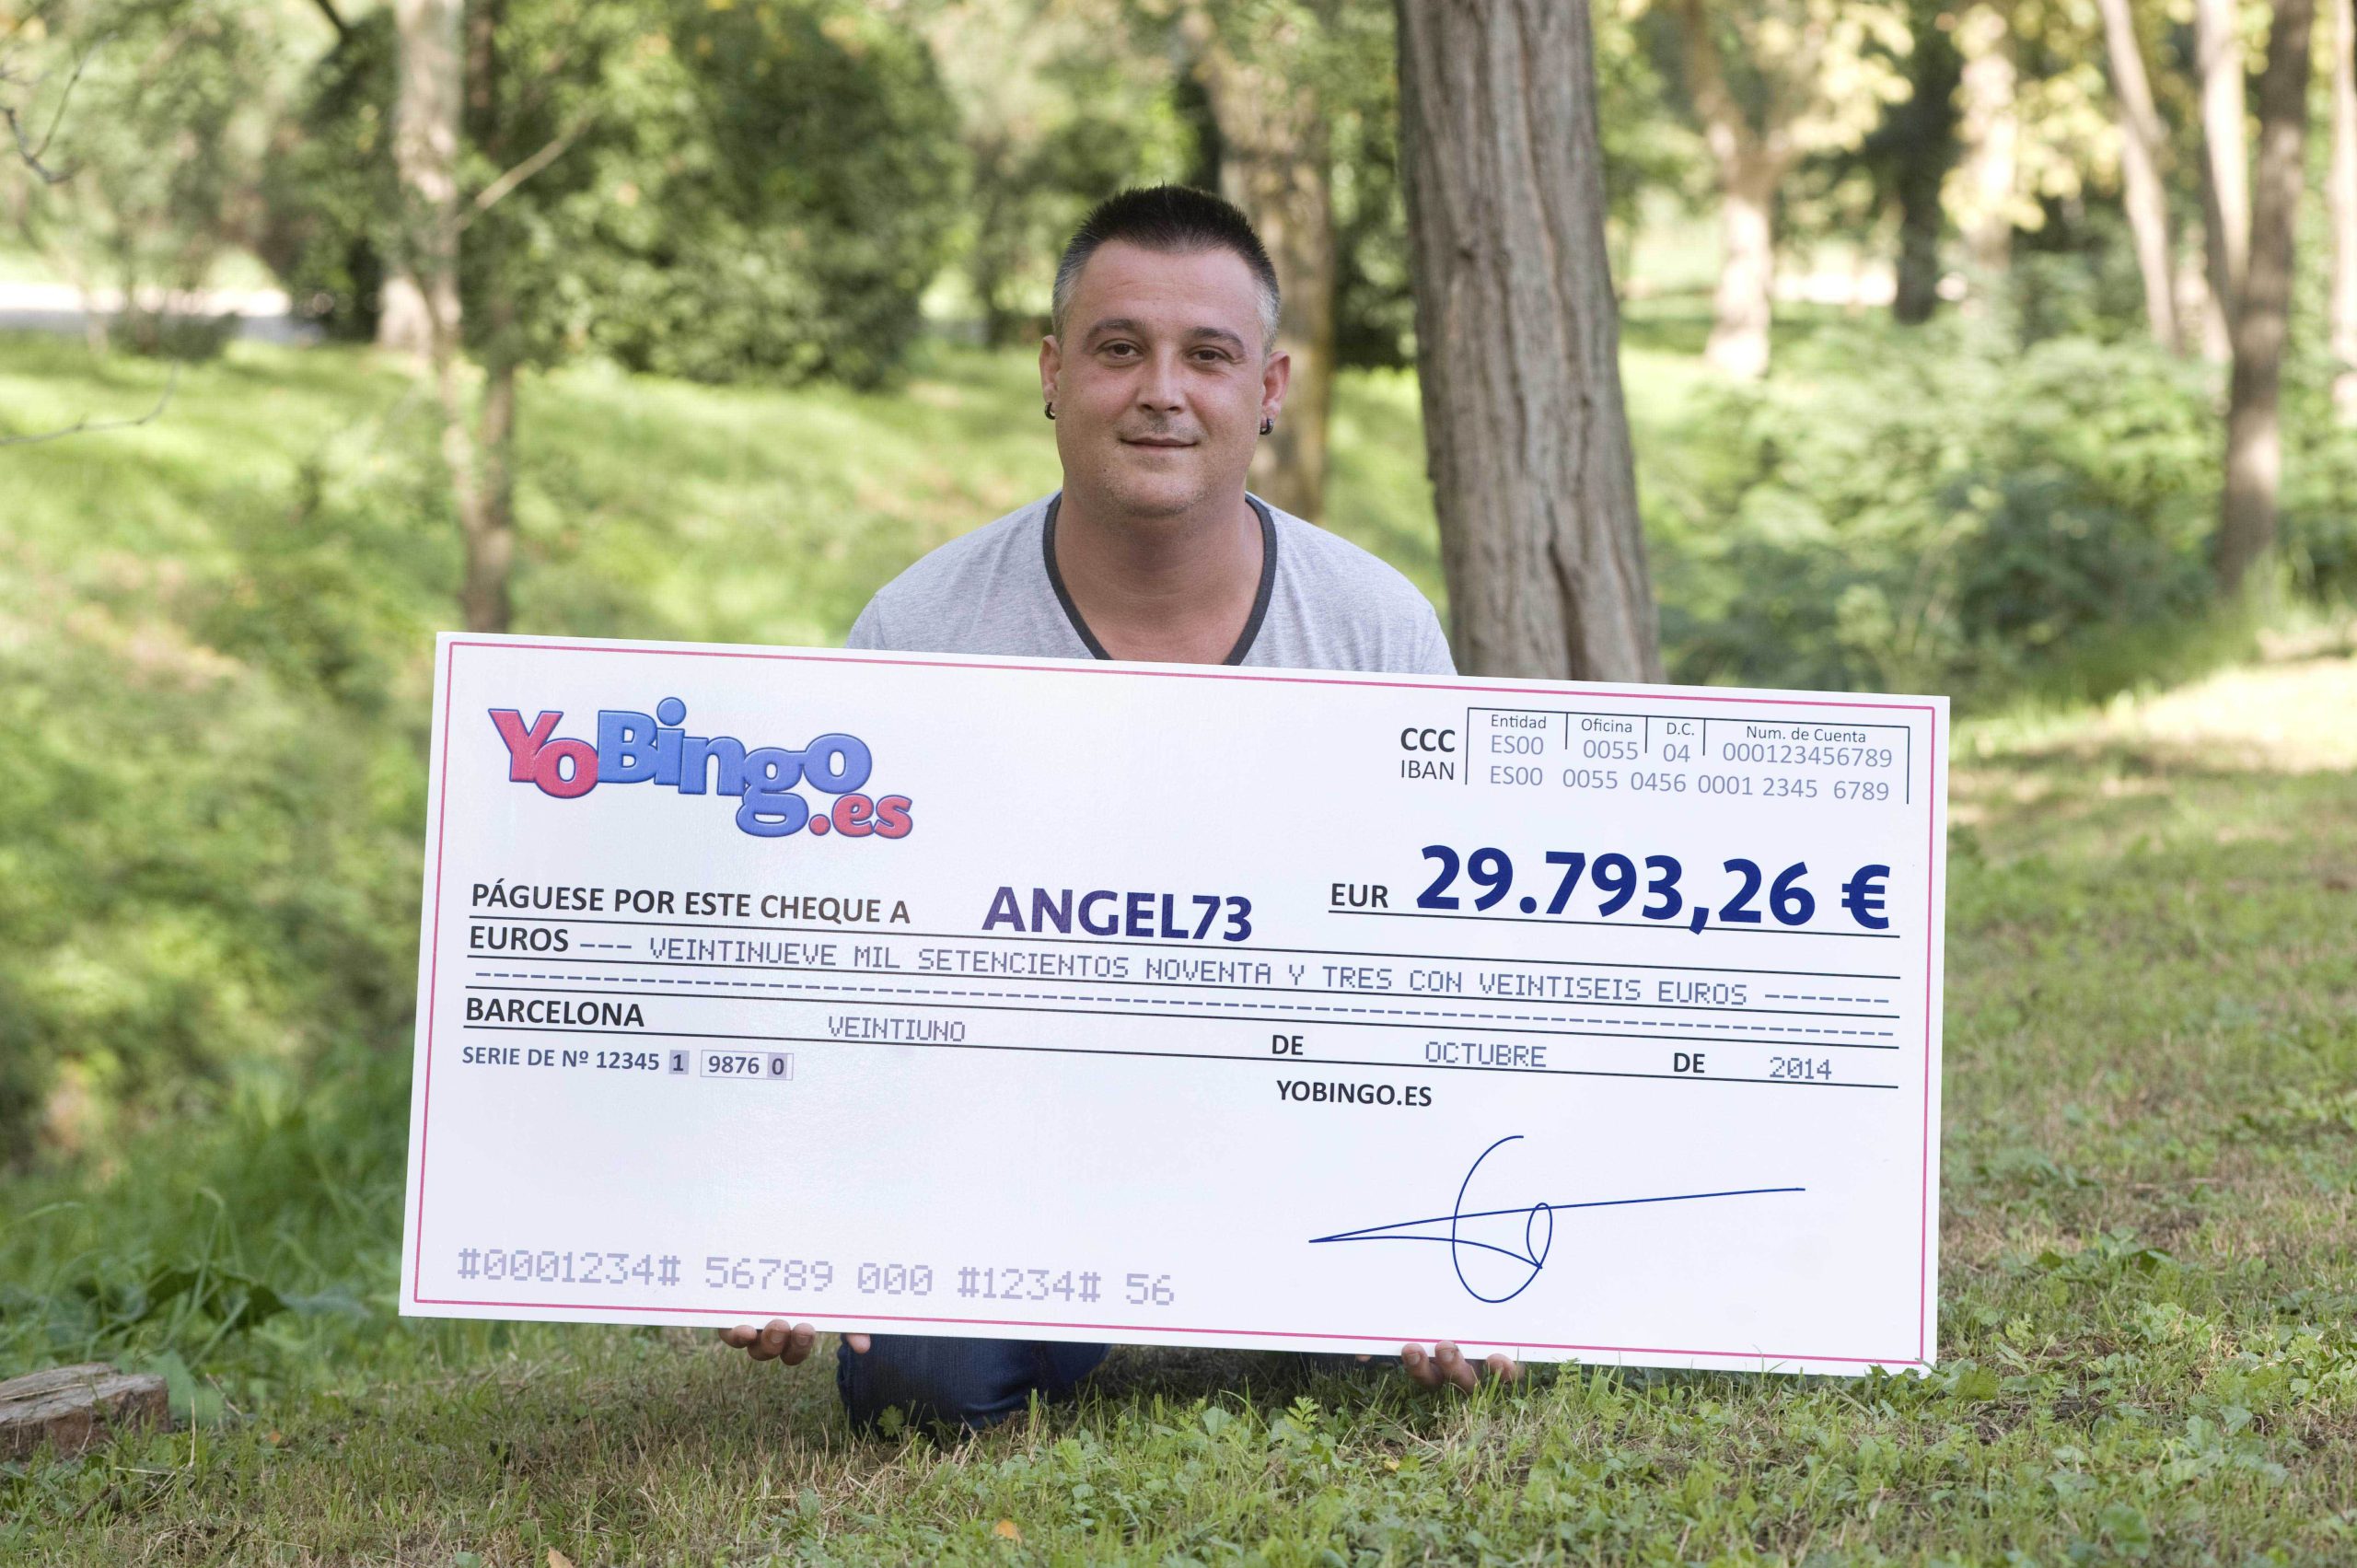 ANGEL73 recibió el cheque con los 29.793,26€ del premio